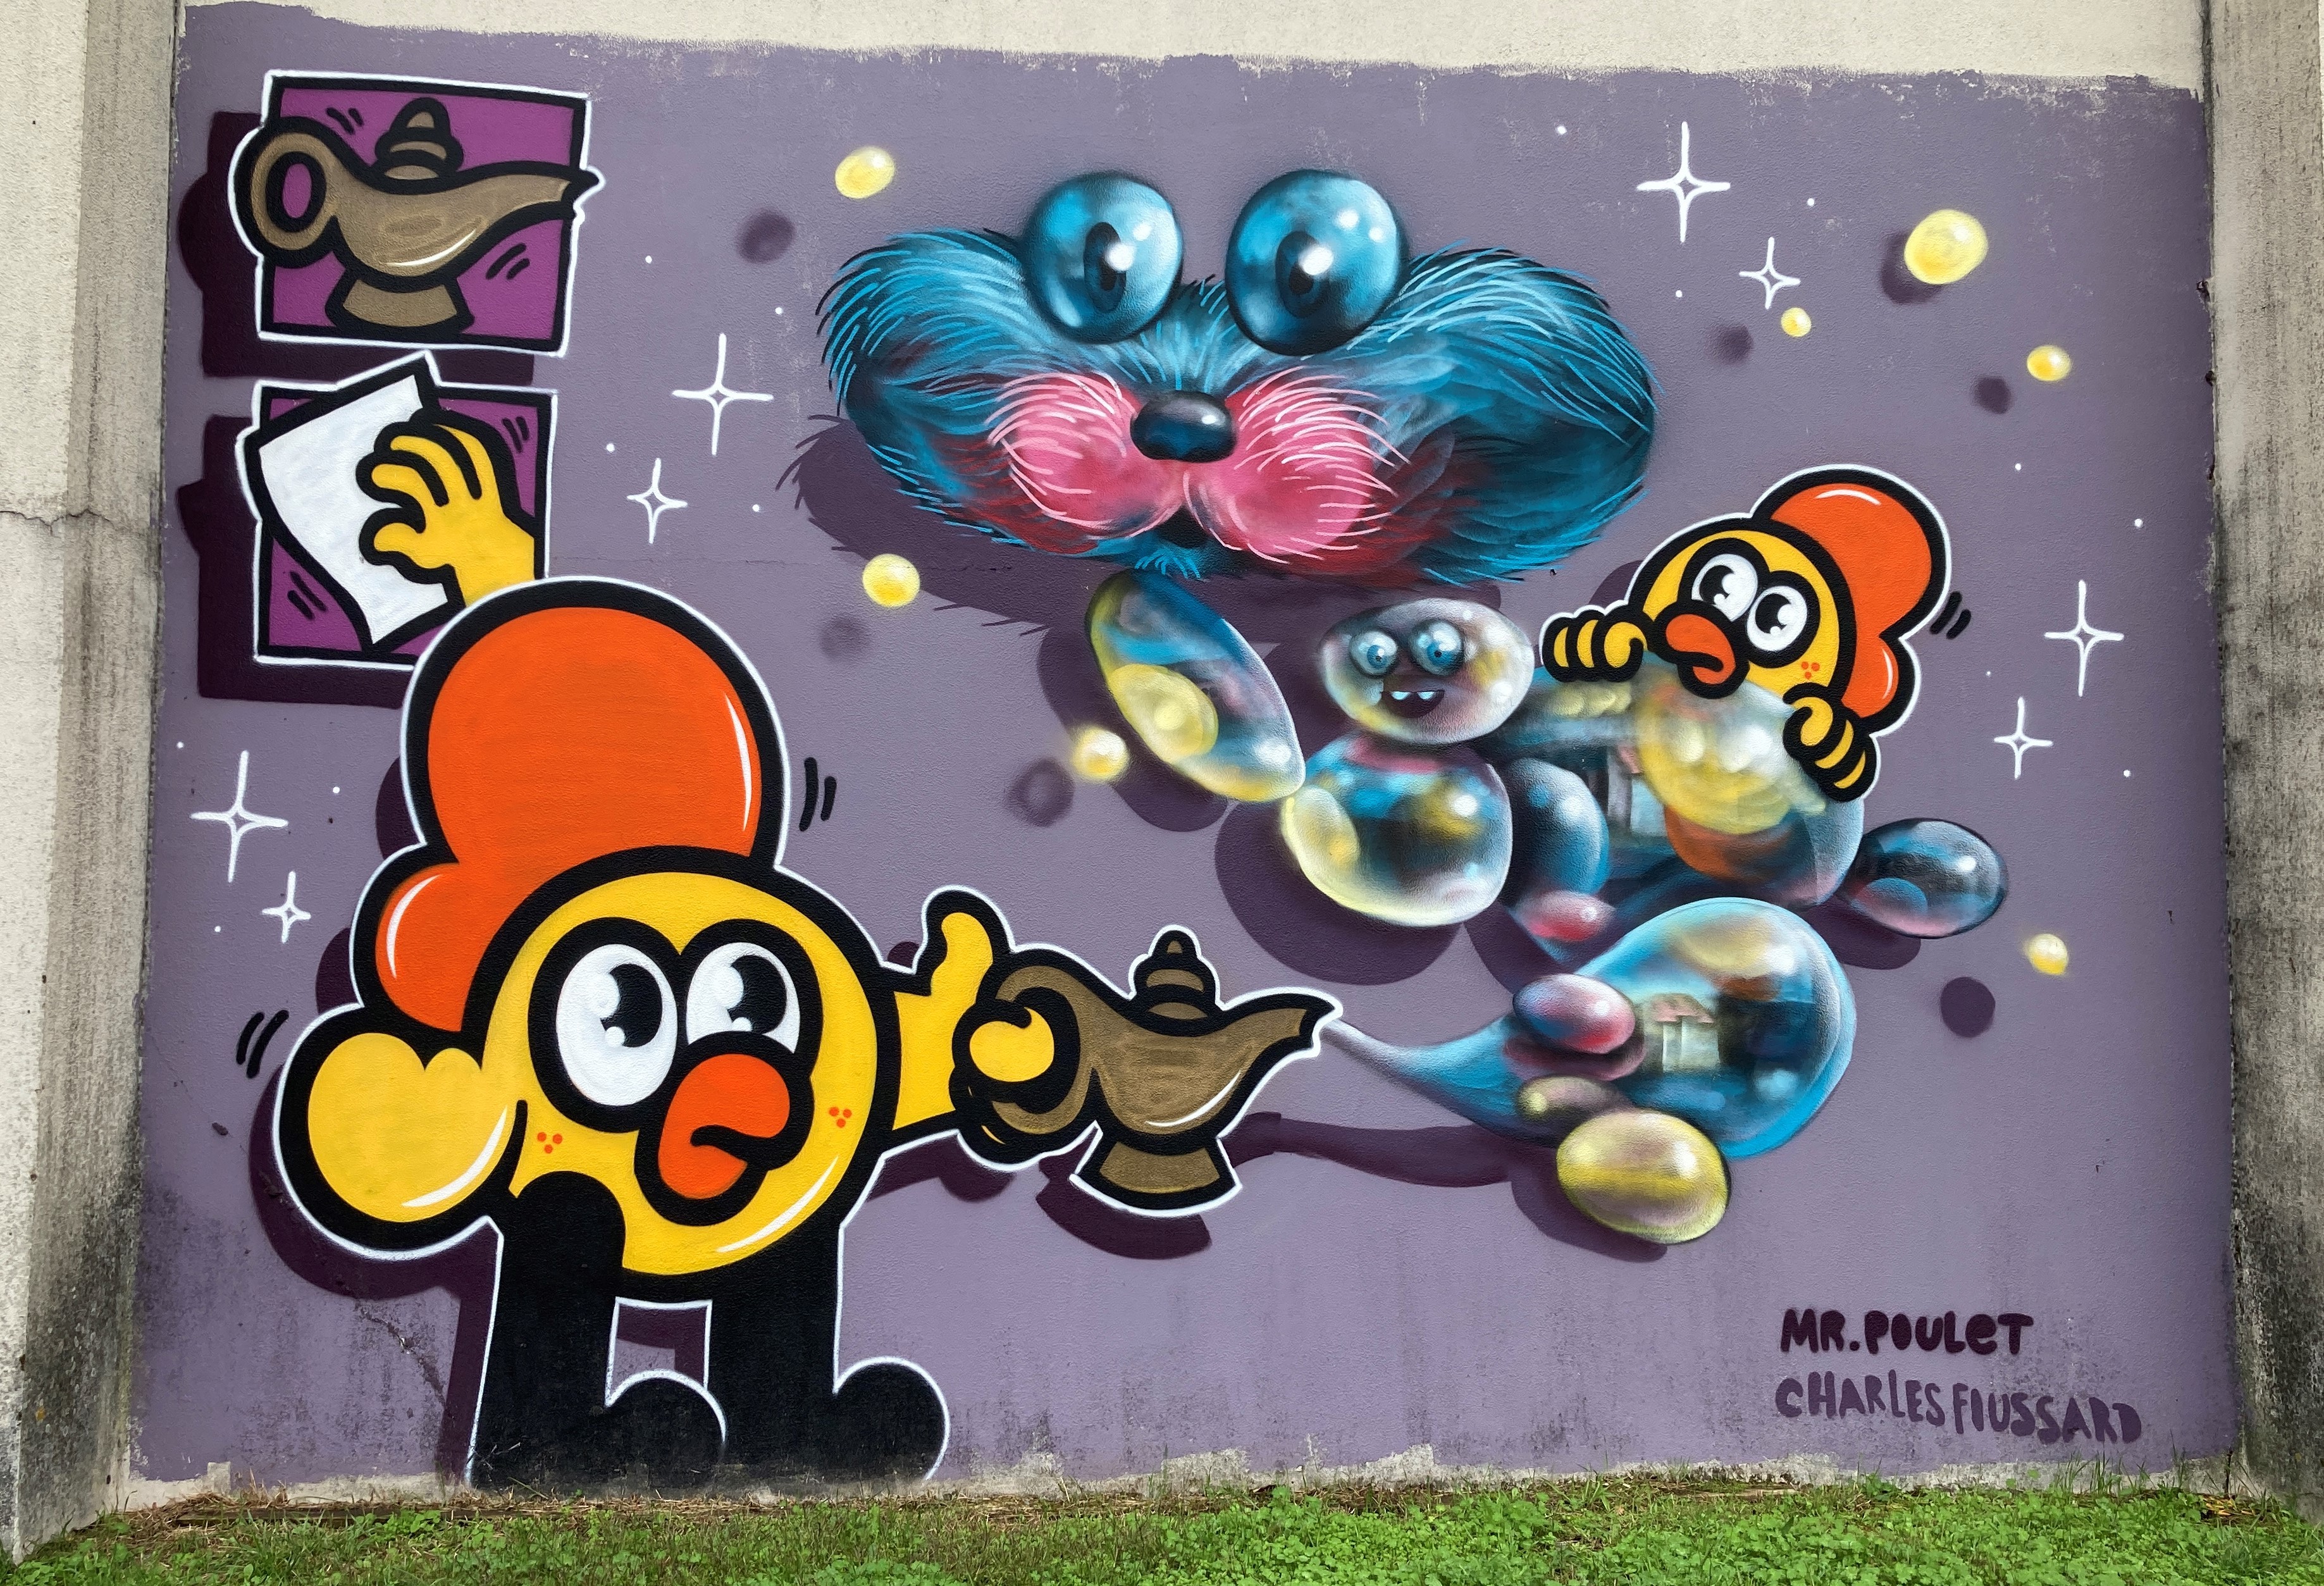 Graffiti 6857 Mr POULET de Charles Foussard capturé par Mephisroth à Pessac France